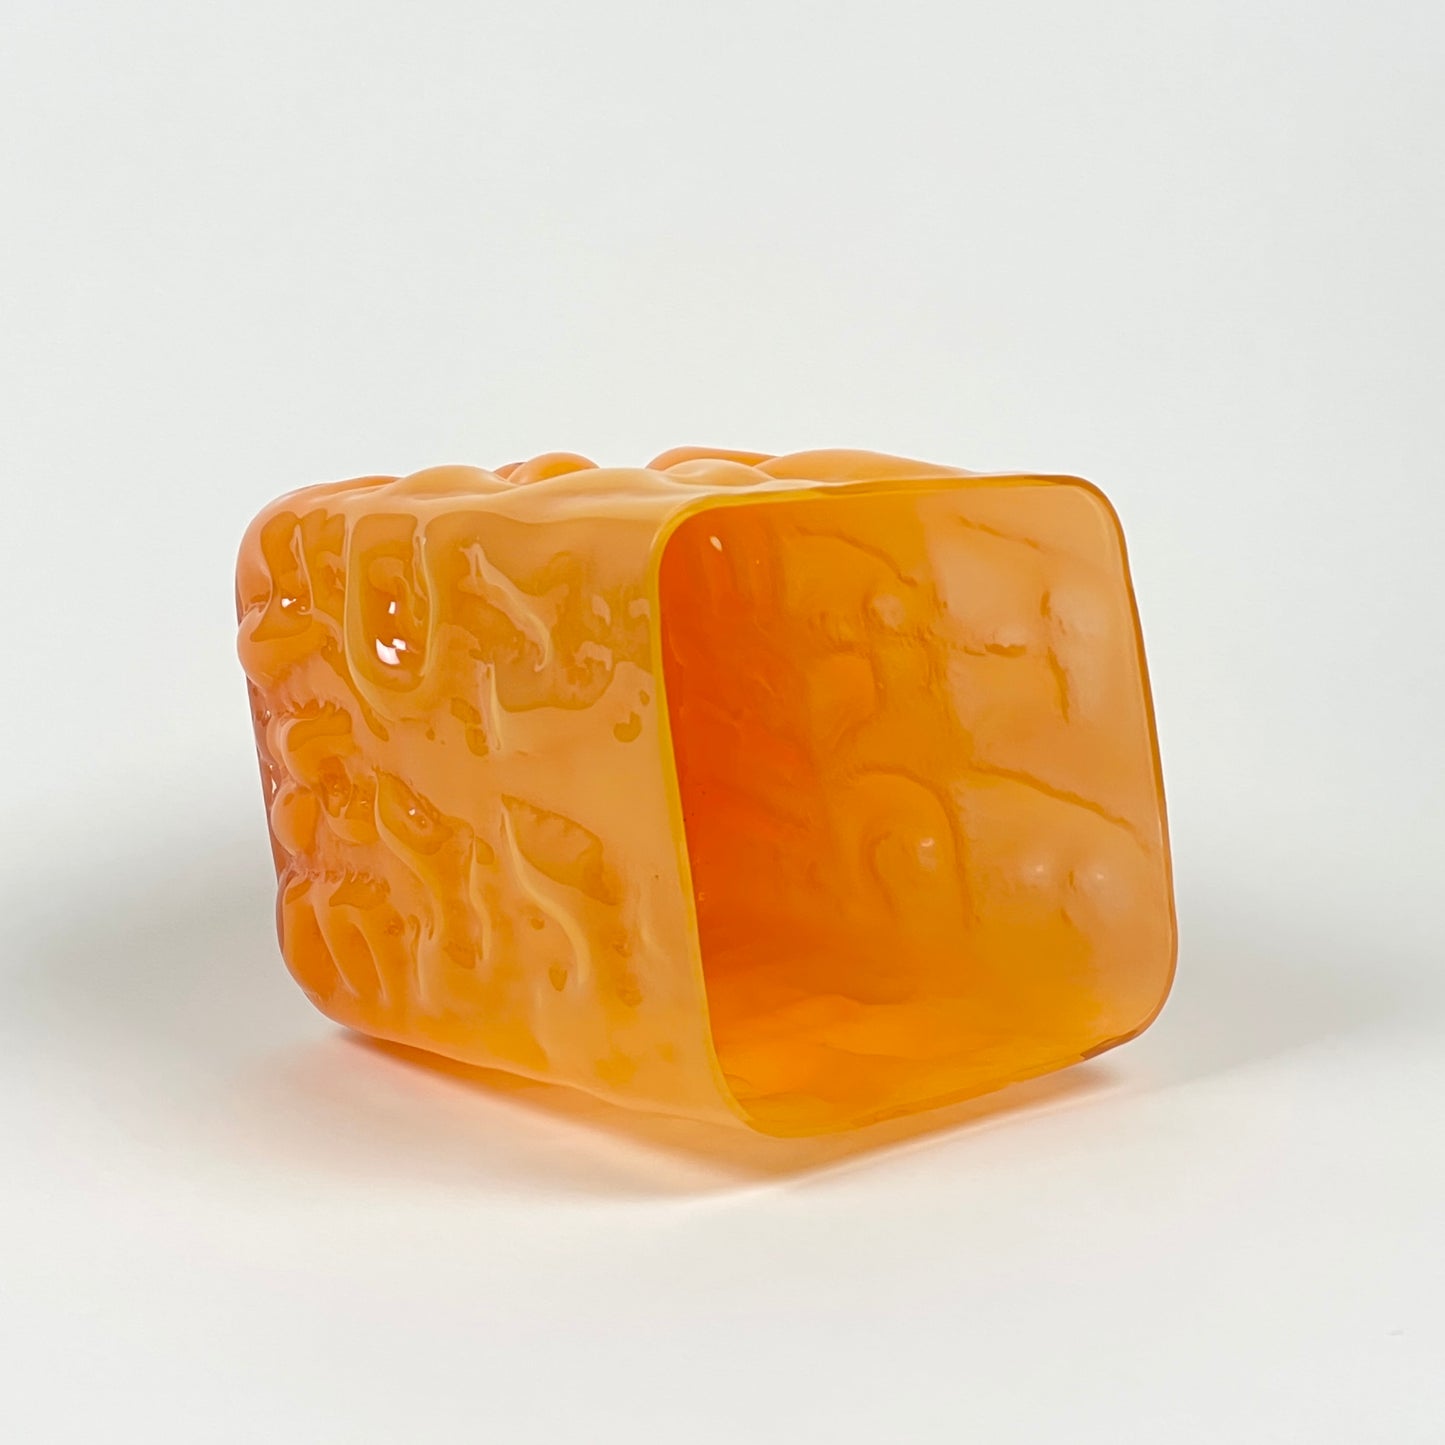 Orange vase "AADÄÄRE" by Studio Reiser